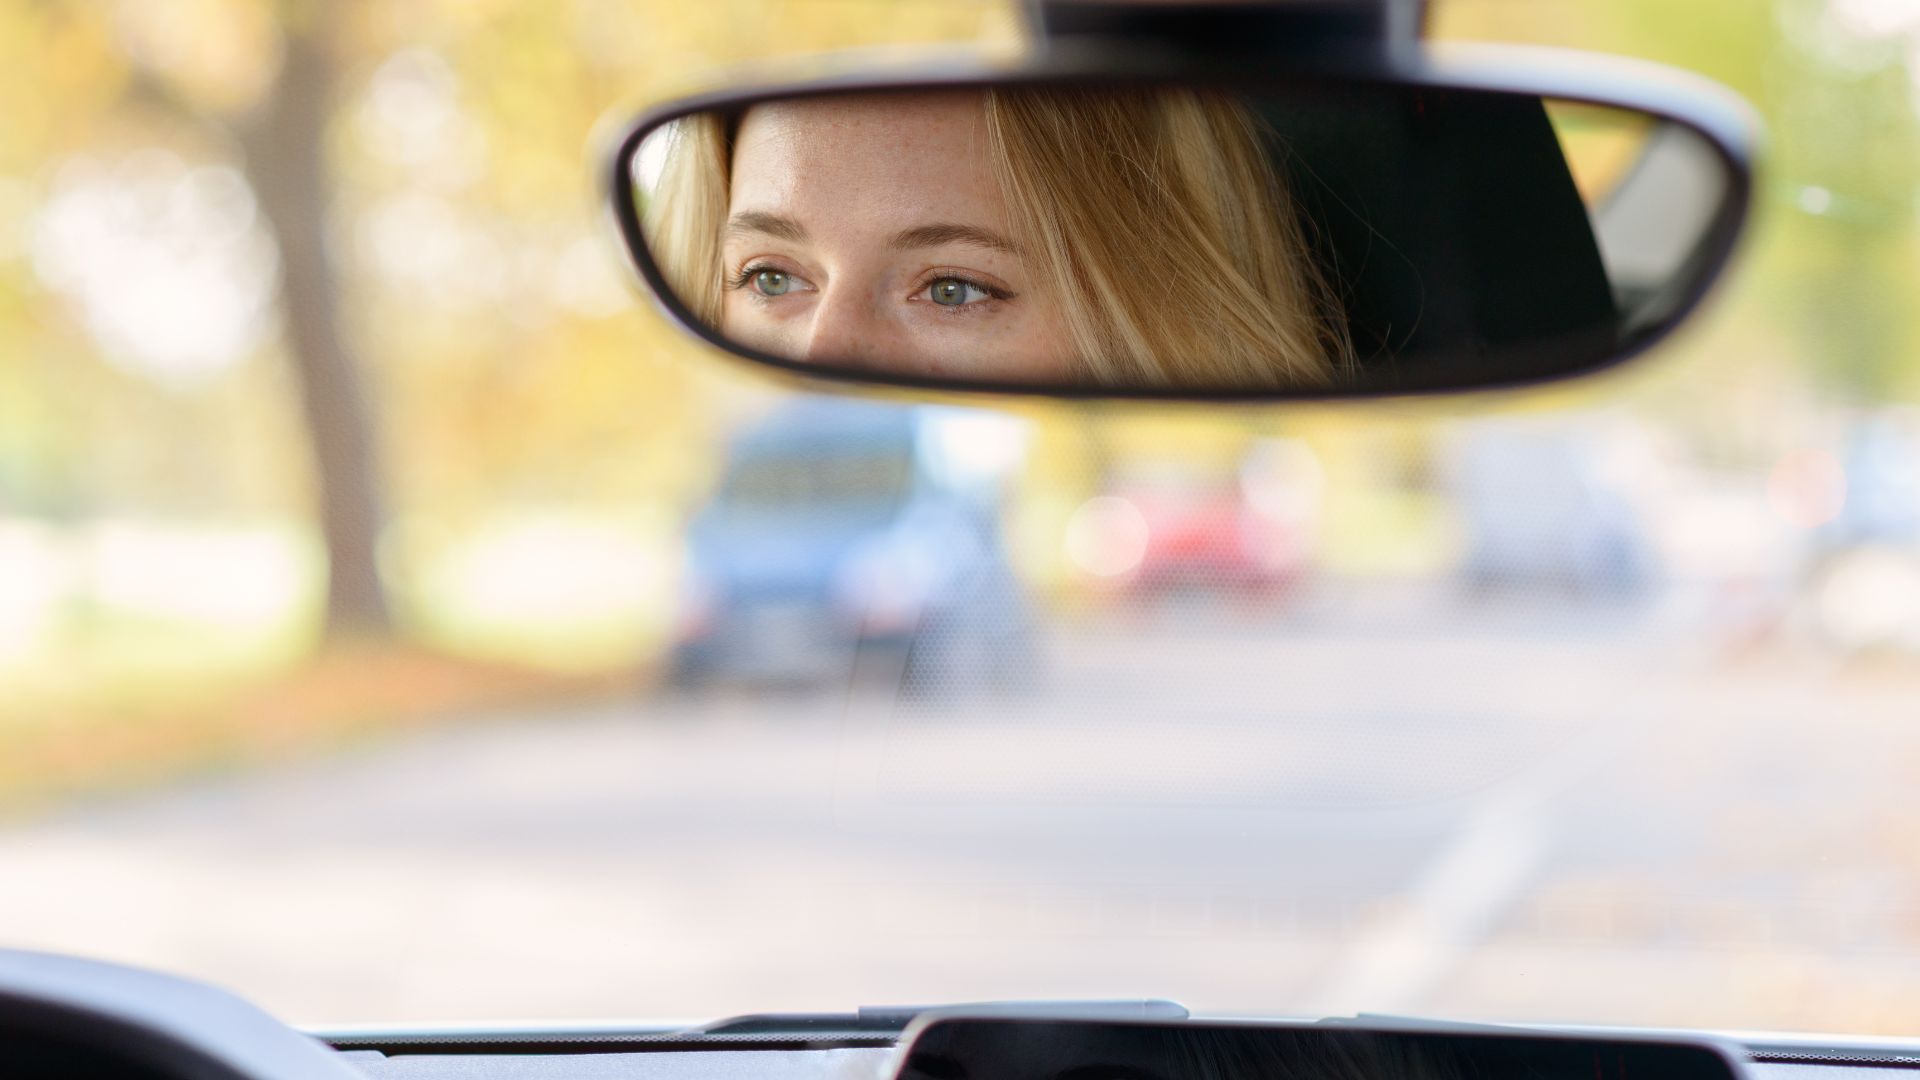 Водитель смотрит в зеркало. Глаза в зеркале машины.